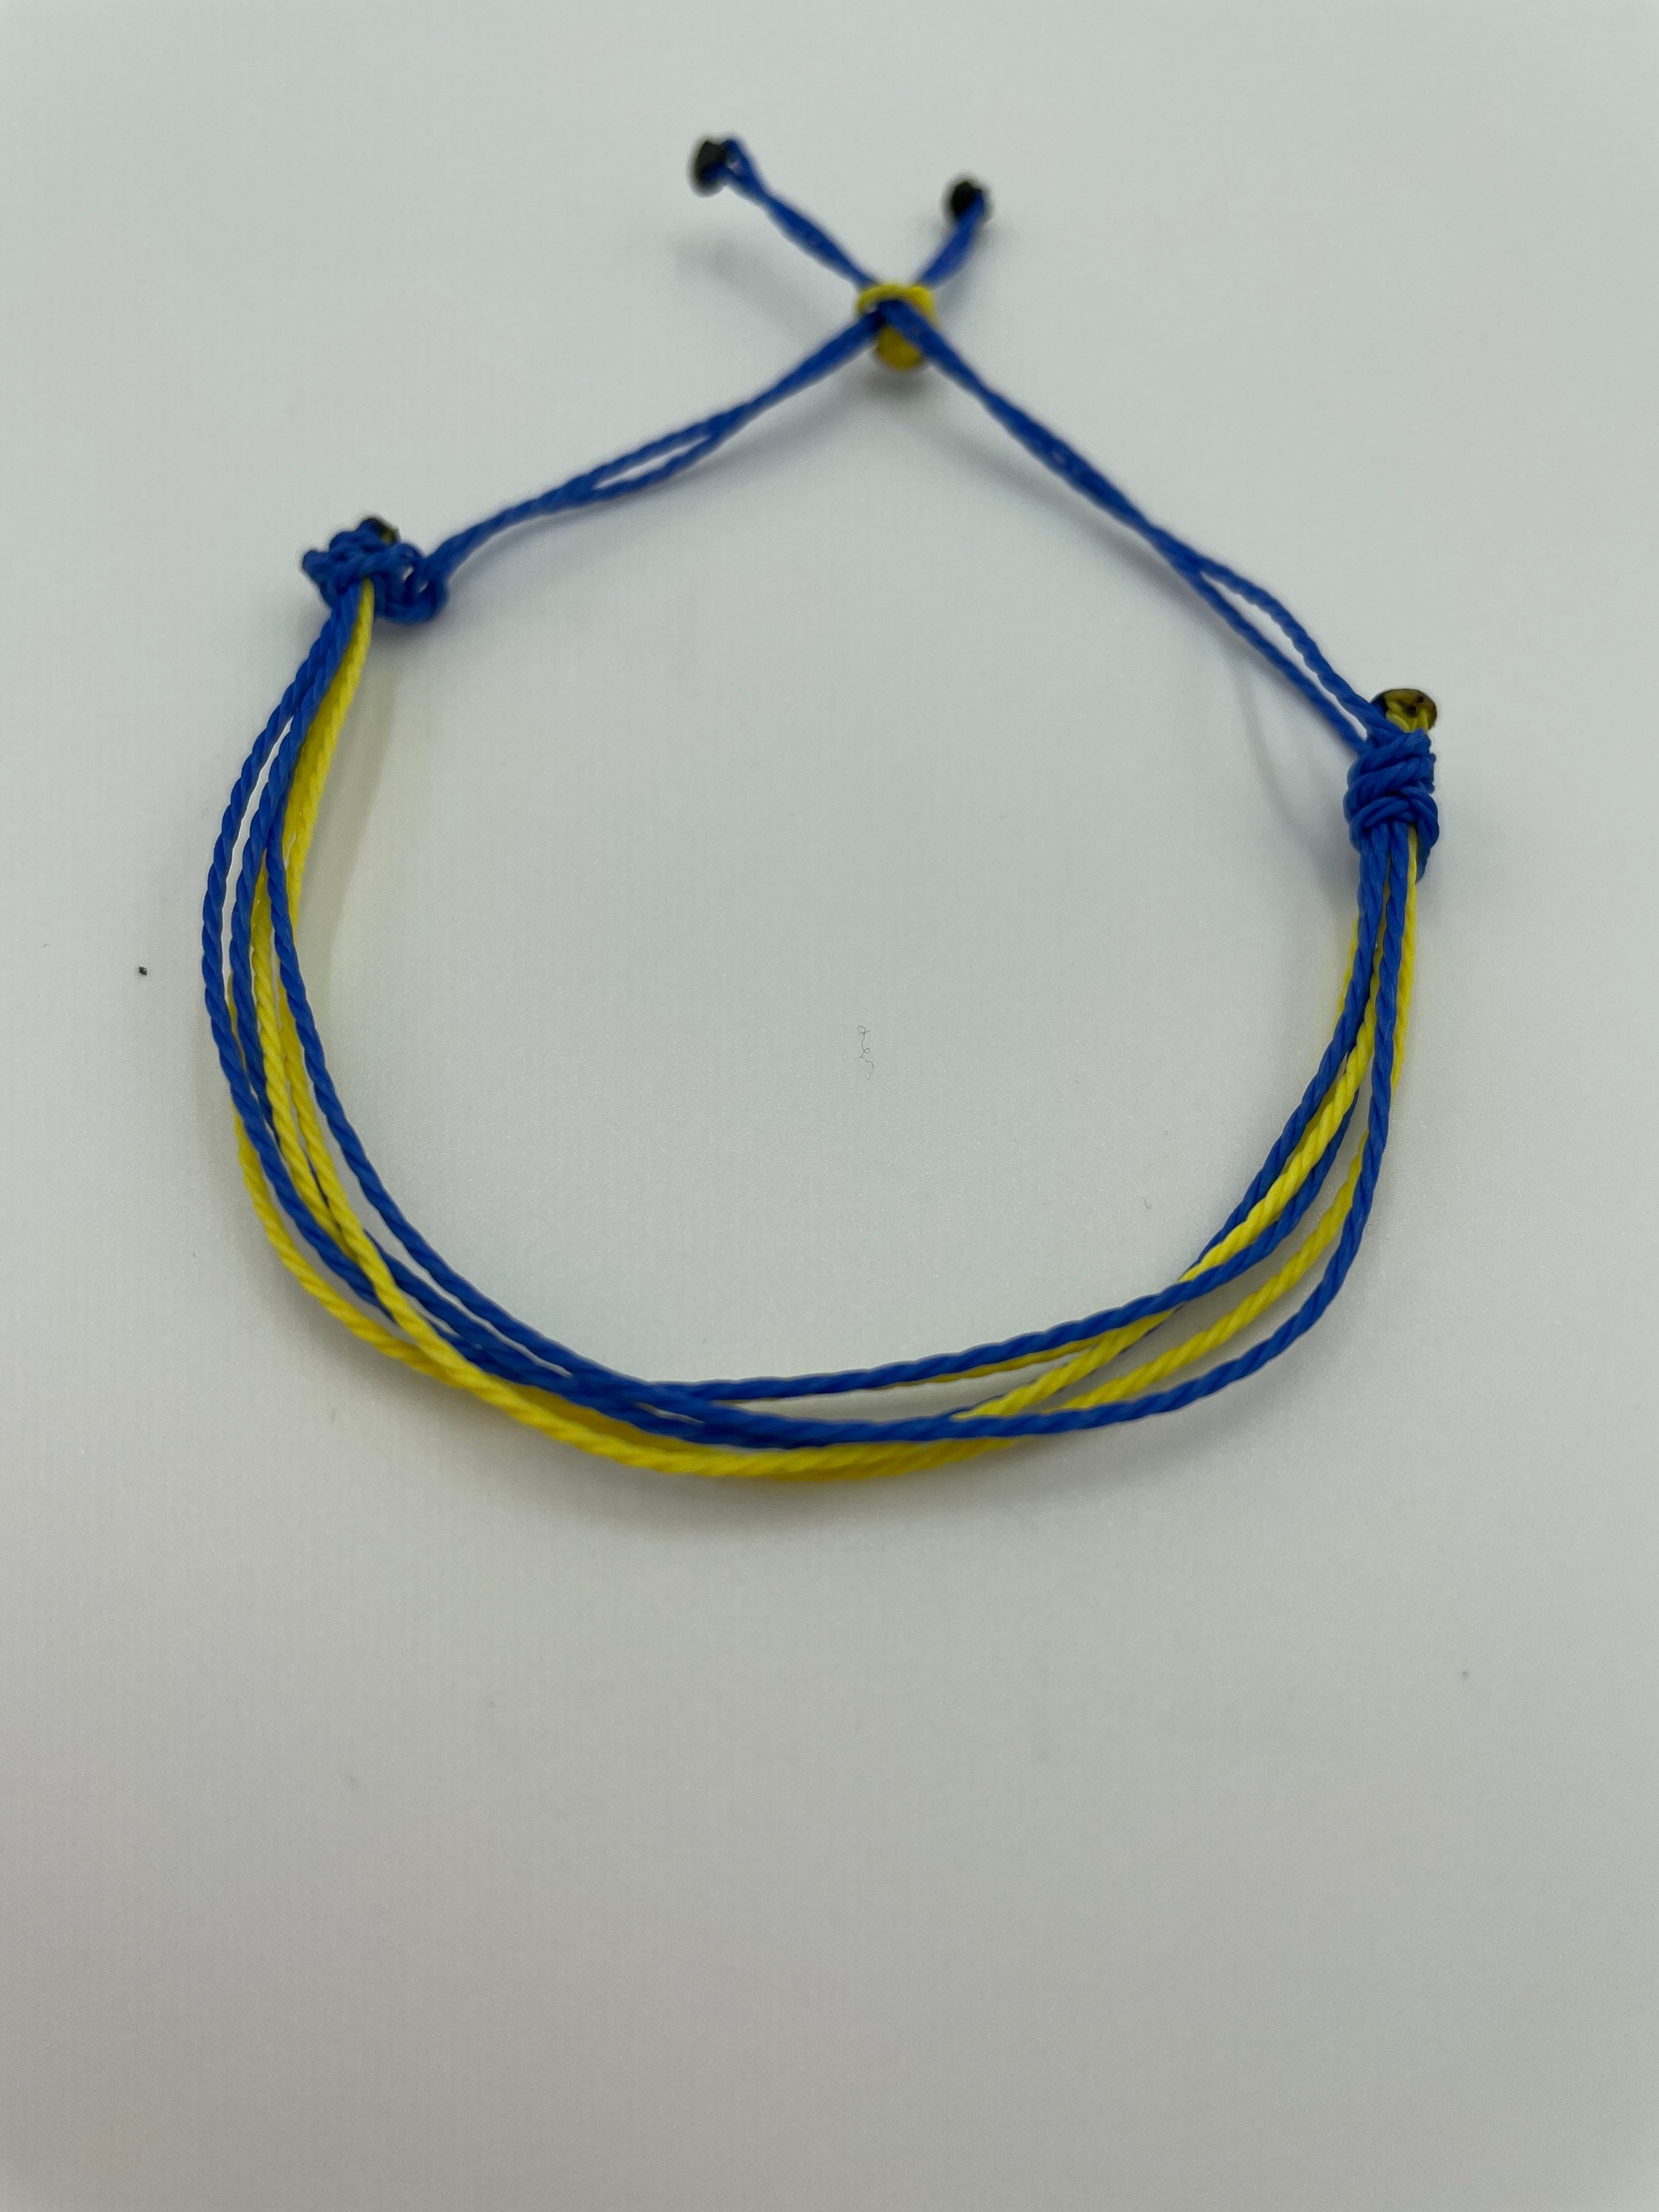 Hope for Ukraine Handmade Support Bracelet